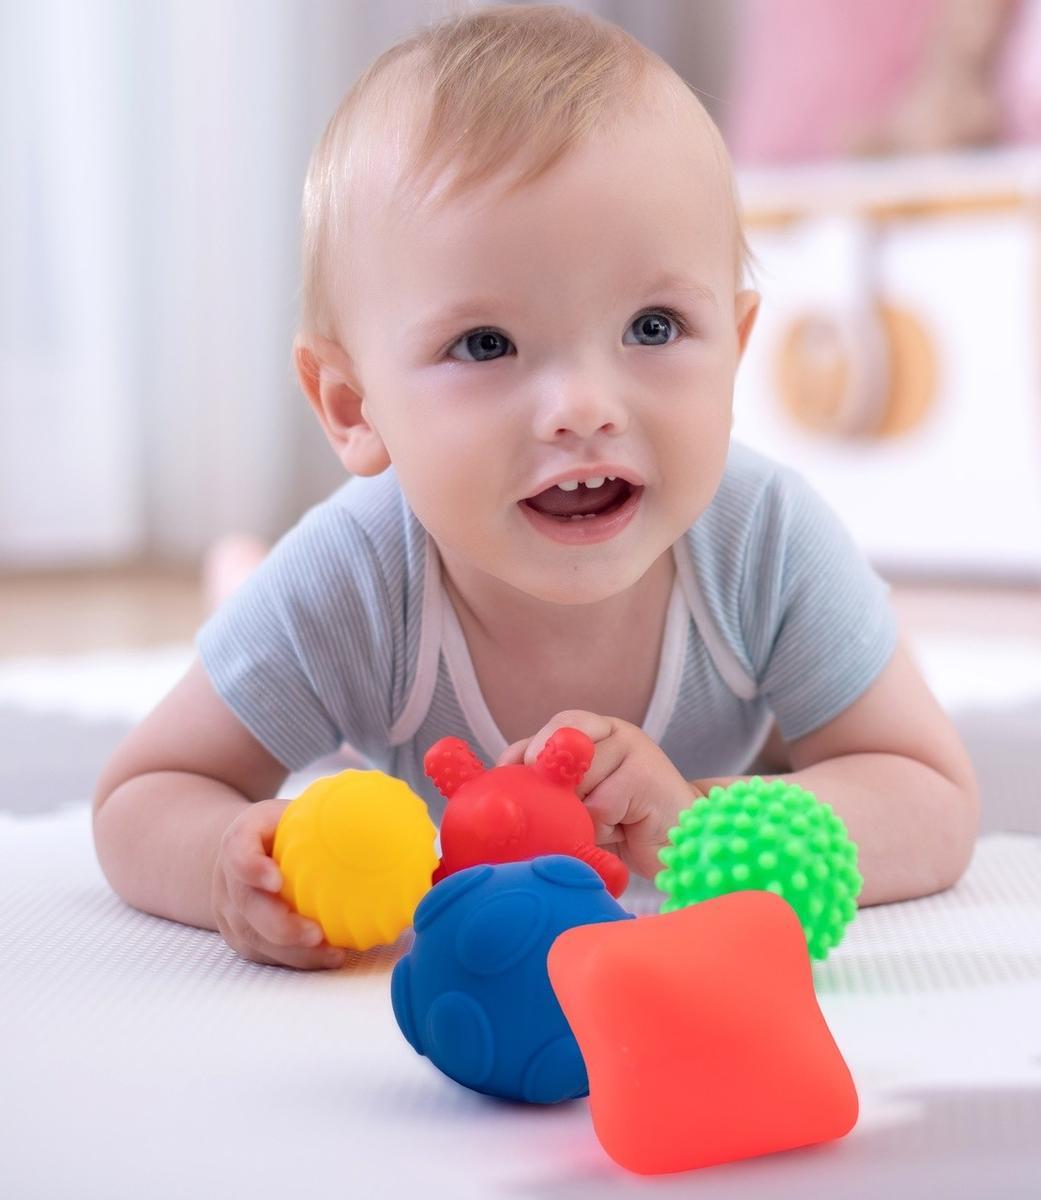 Zabawka sensoryczna kolorowe kształty 5 sztuk dla dziecka do zabawy  nr. 4